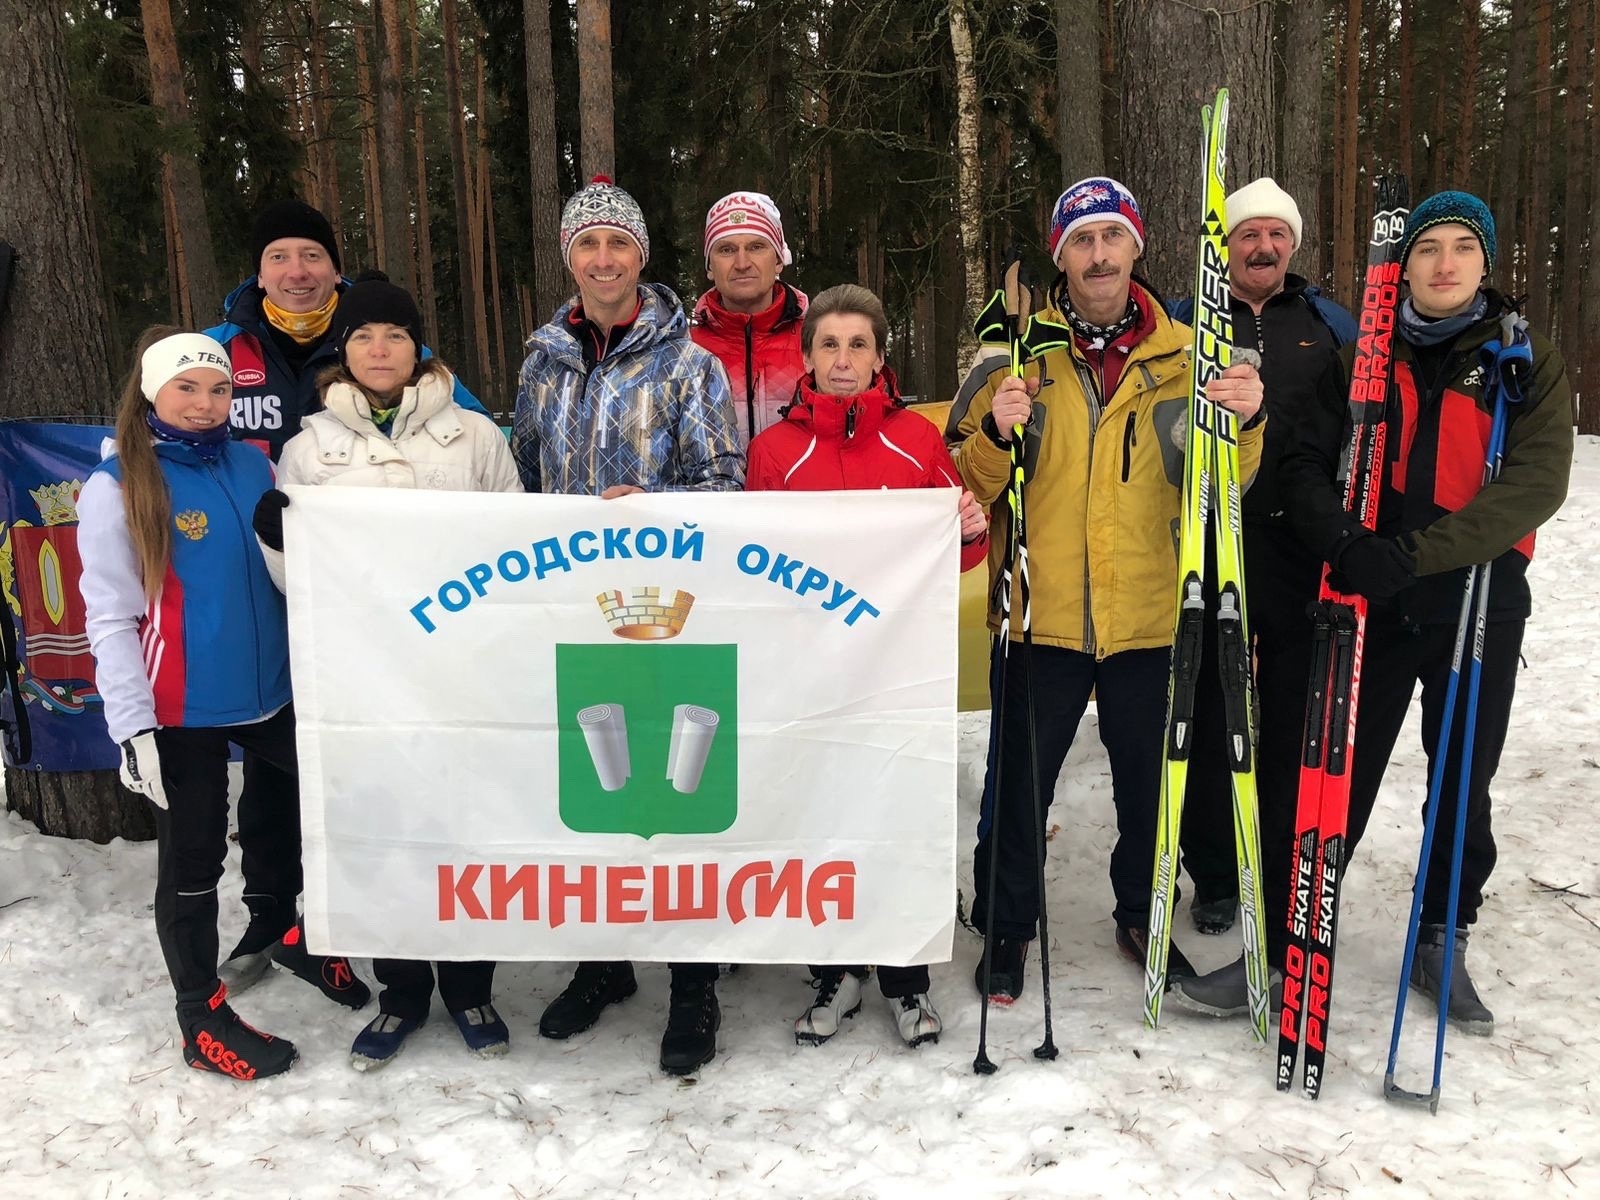 Команды Кинешмы в 7-й раз победила на региональном зимнем фестивале ГТО